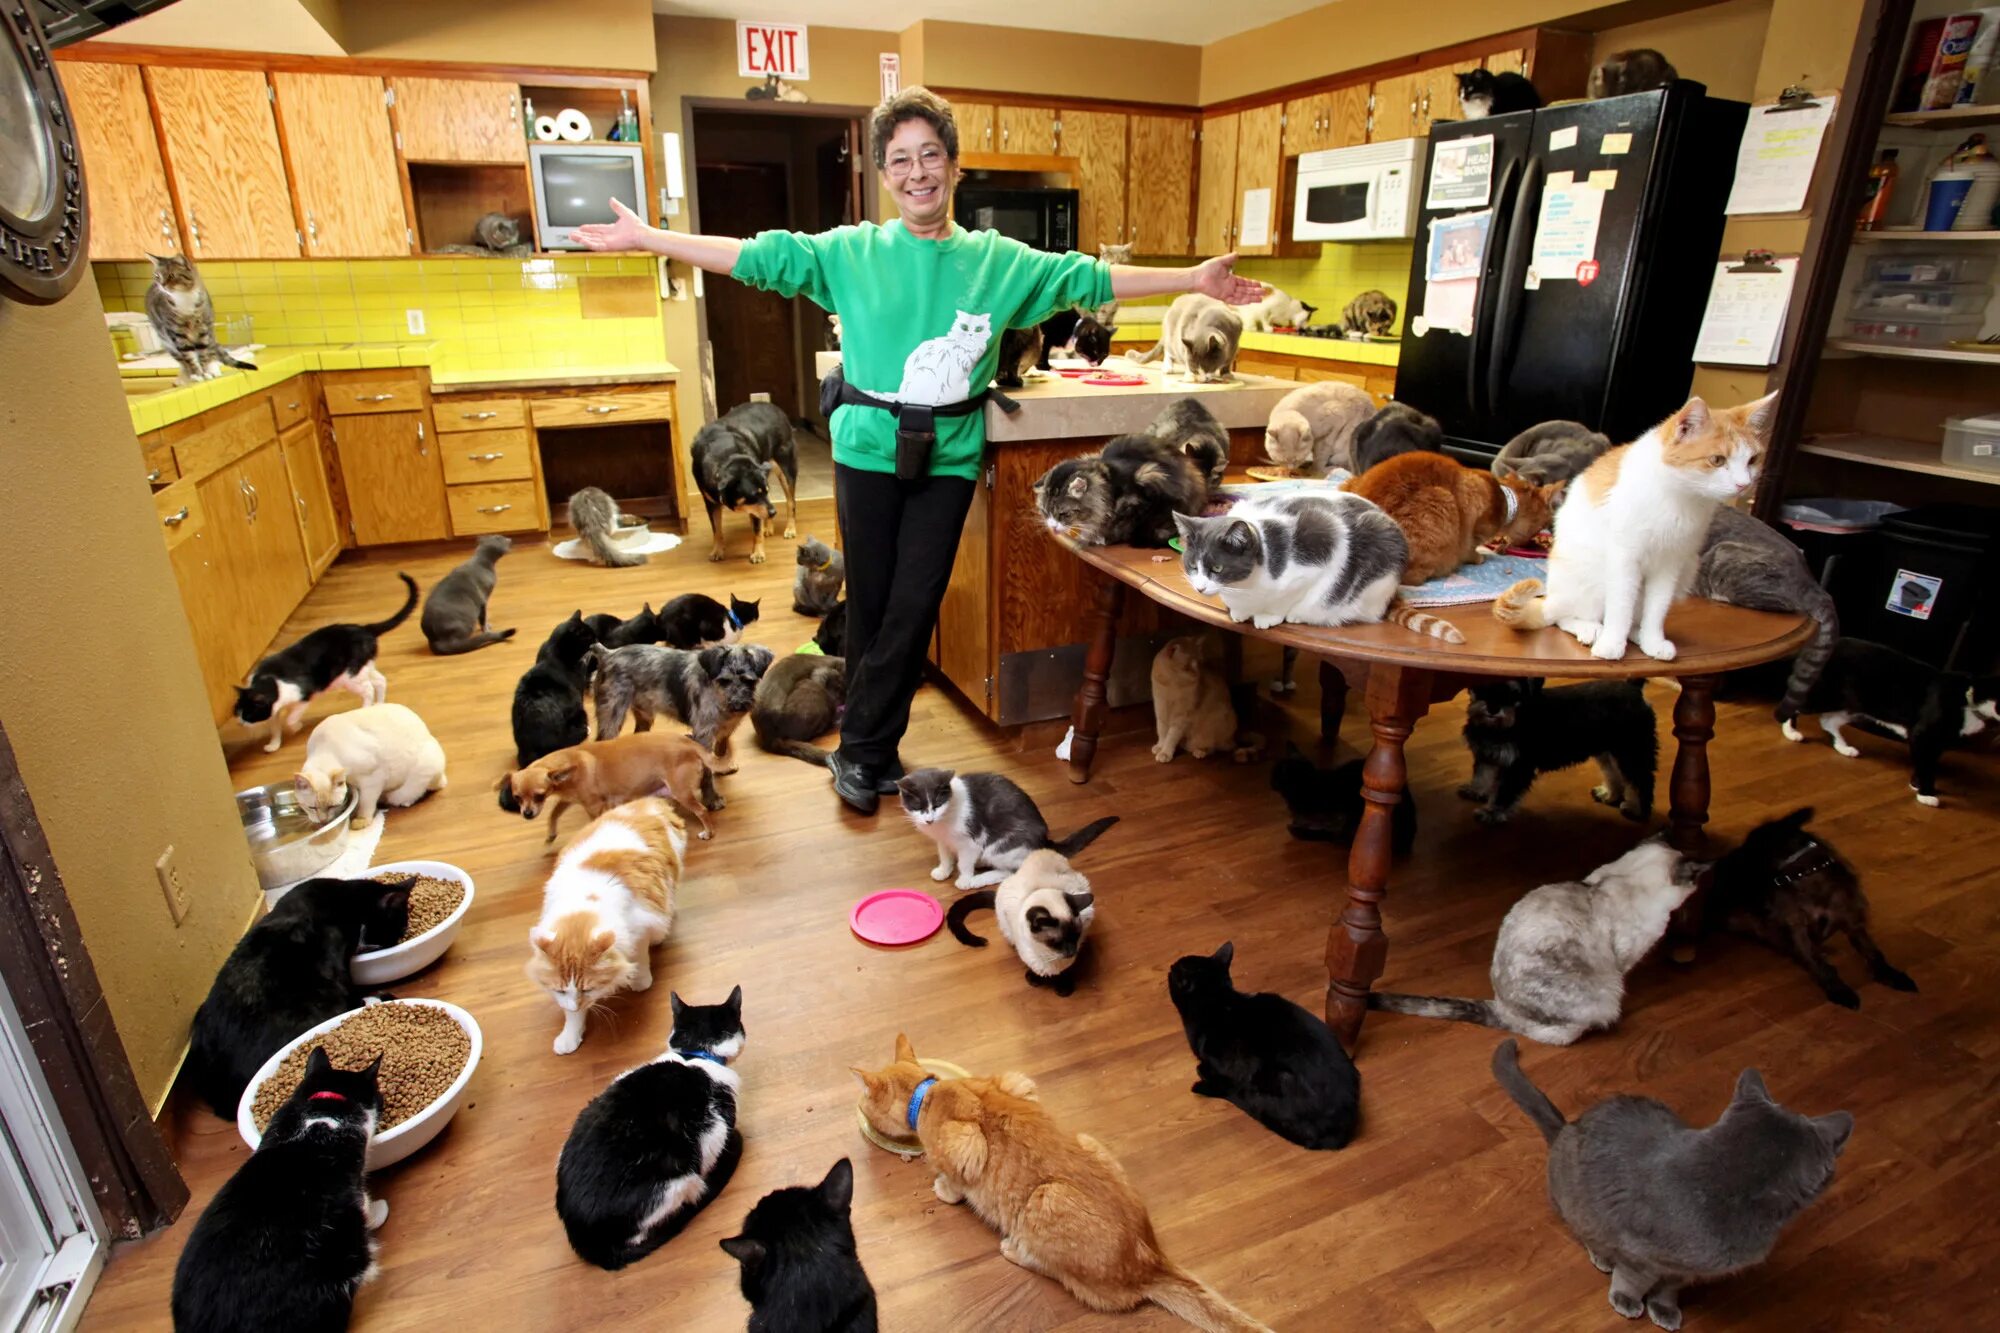 Как меньше бывать дома. Домашние животные в доме. Куча кошек в квартире. Домашиеживотные в квартире. Много животных в квартире.